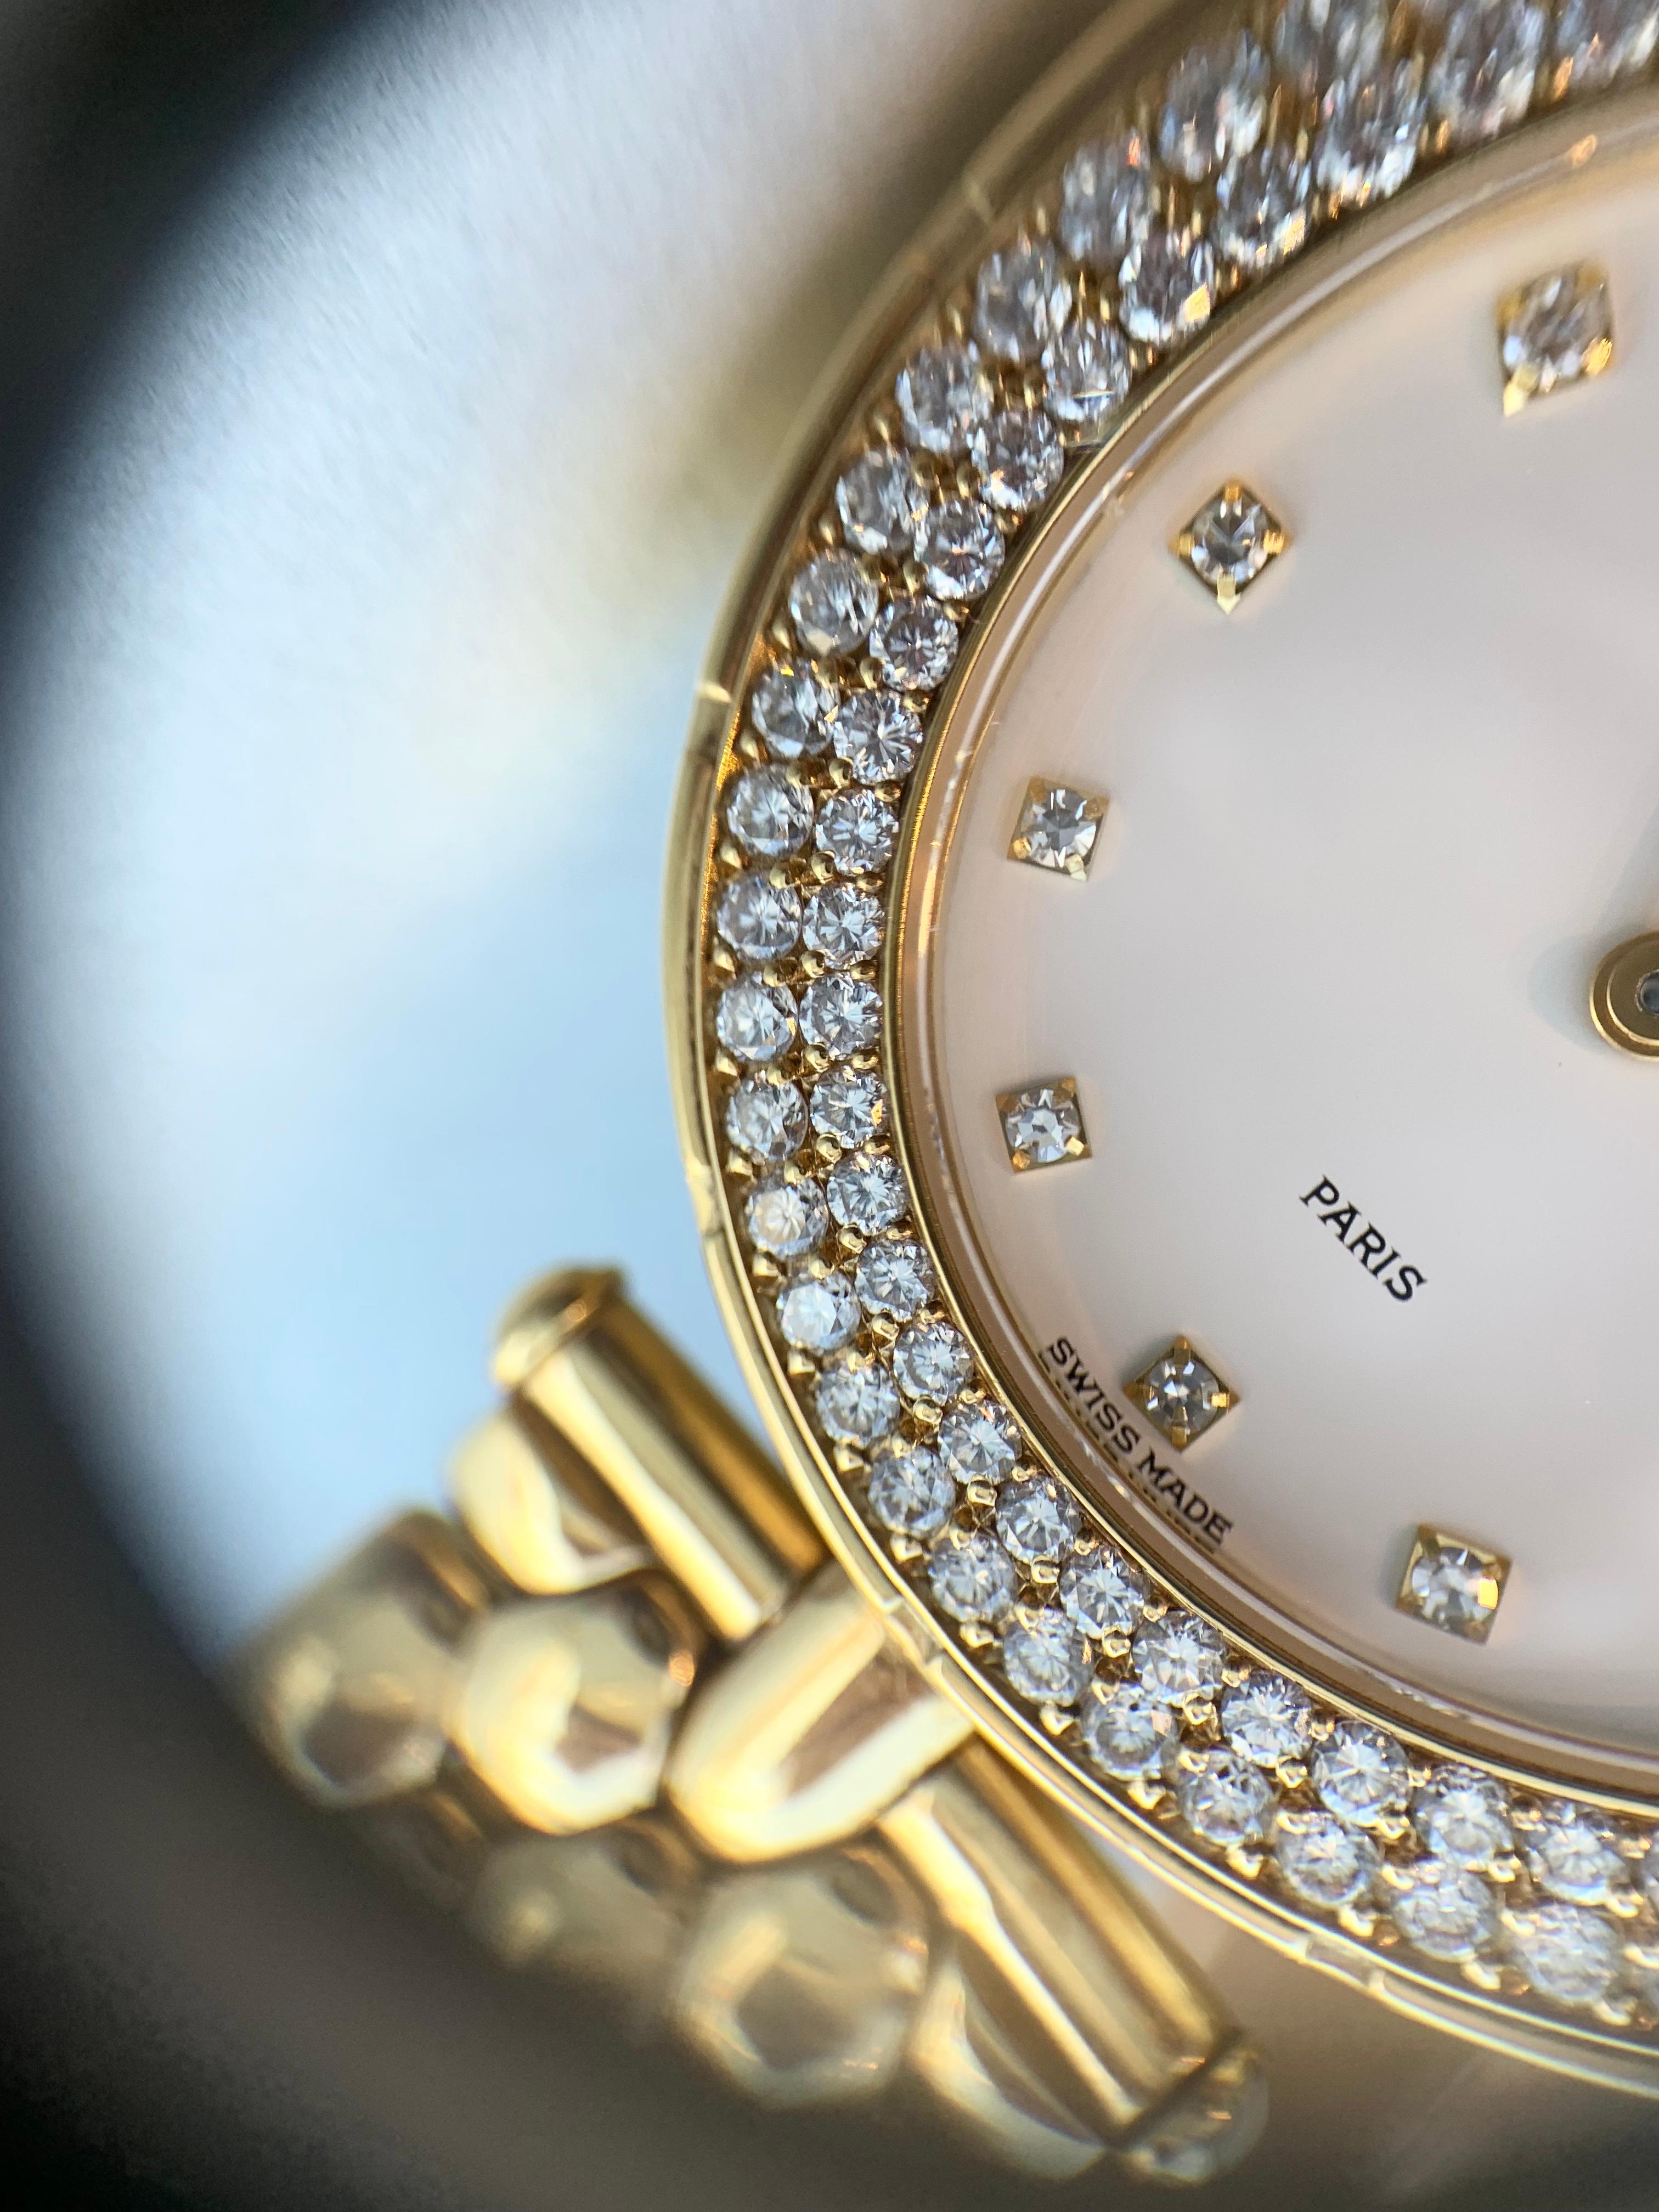 18 Karat Yellow Gold Van Cleef & Arpels Classique Watch with Diamonds 2